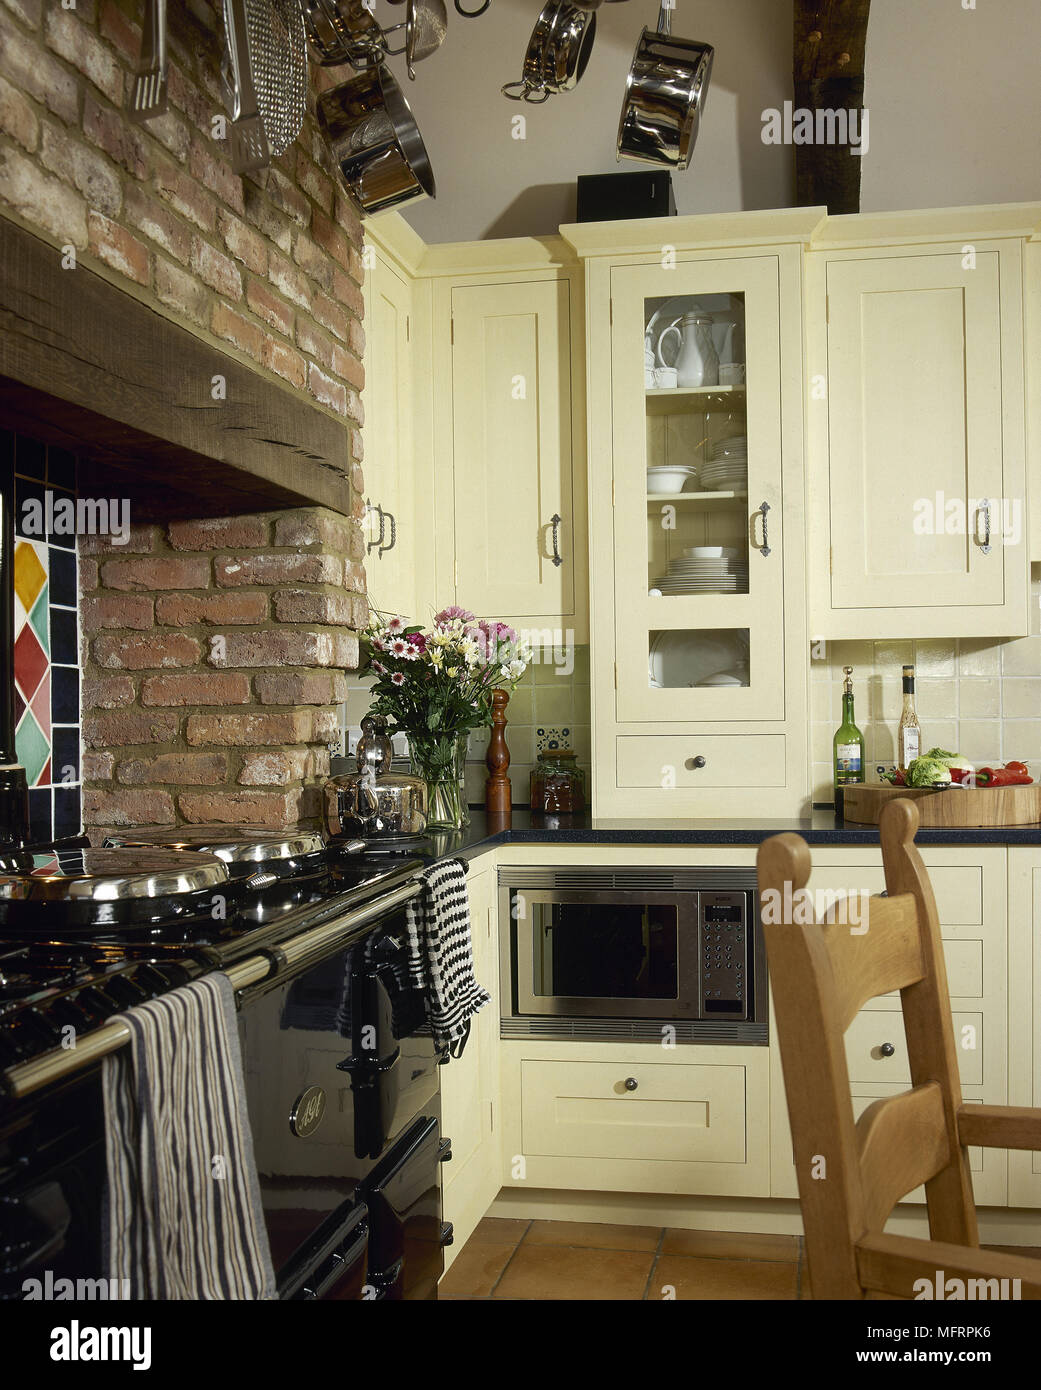 Küche im Landhausstil mit Range Backofen in Backstein Aussparung  Stockfotografie - Alamy